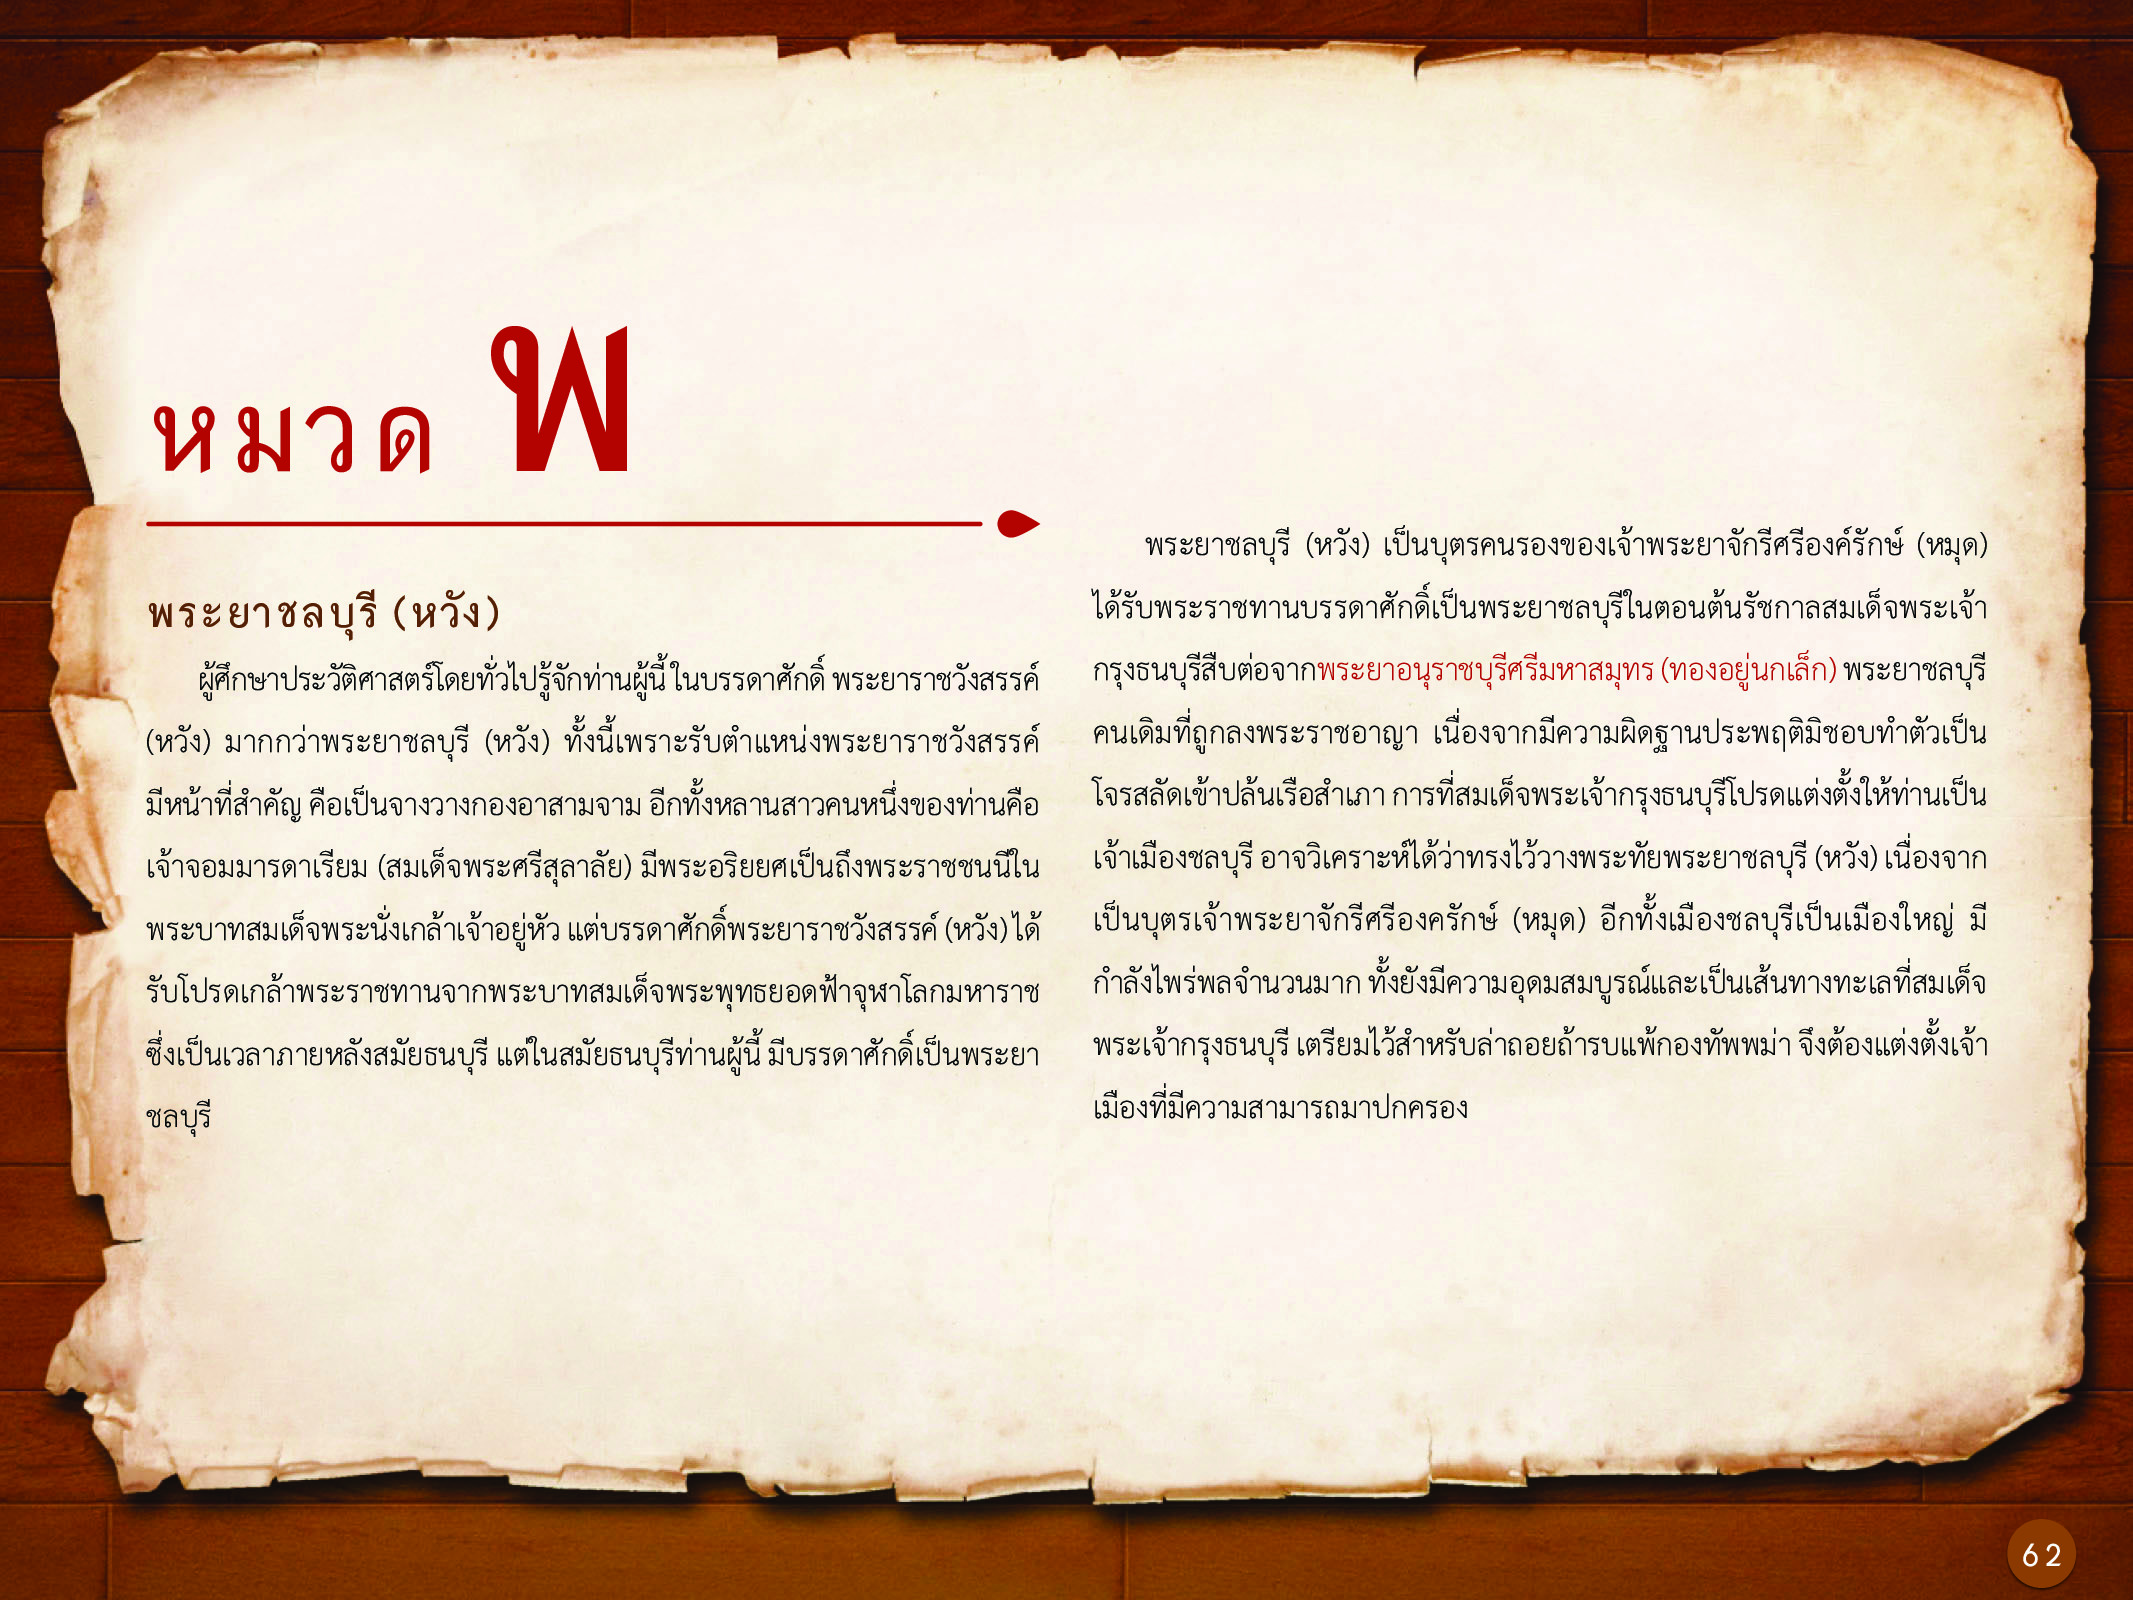 ประวัติศาสตร์กรุงธนบุรี ./images/history_dhonburi/62.jpg